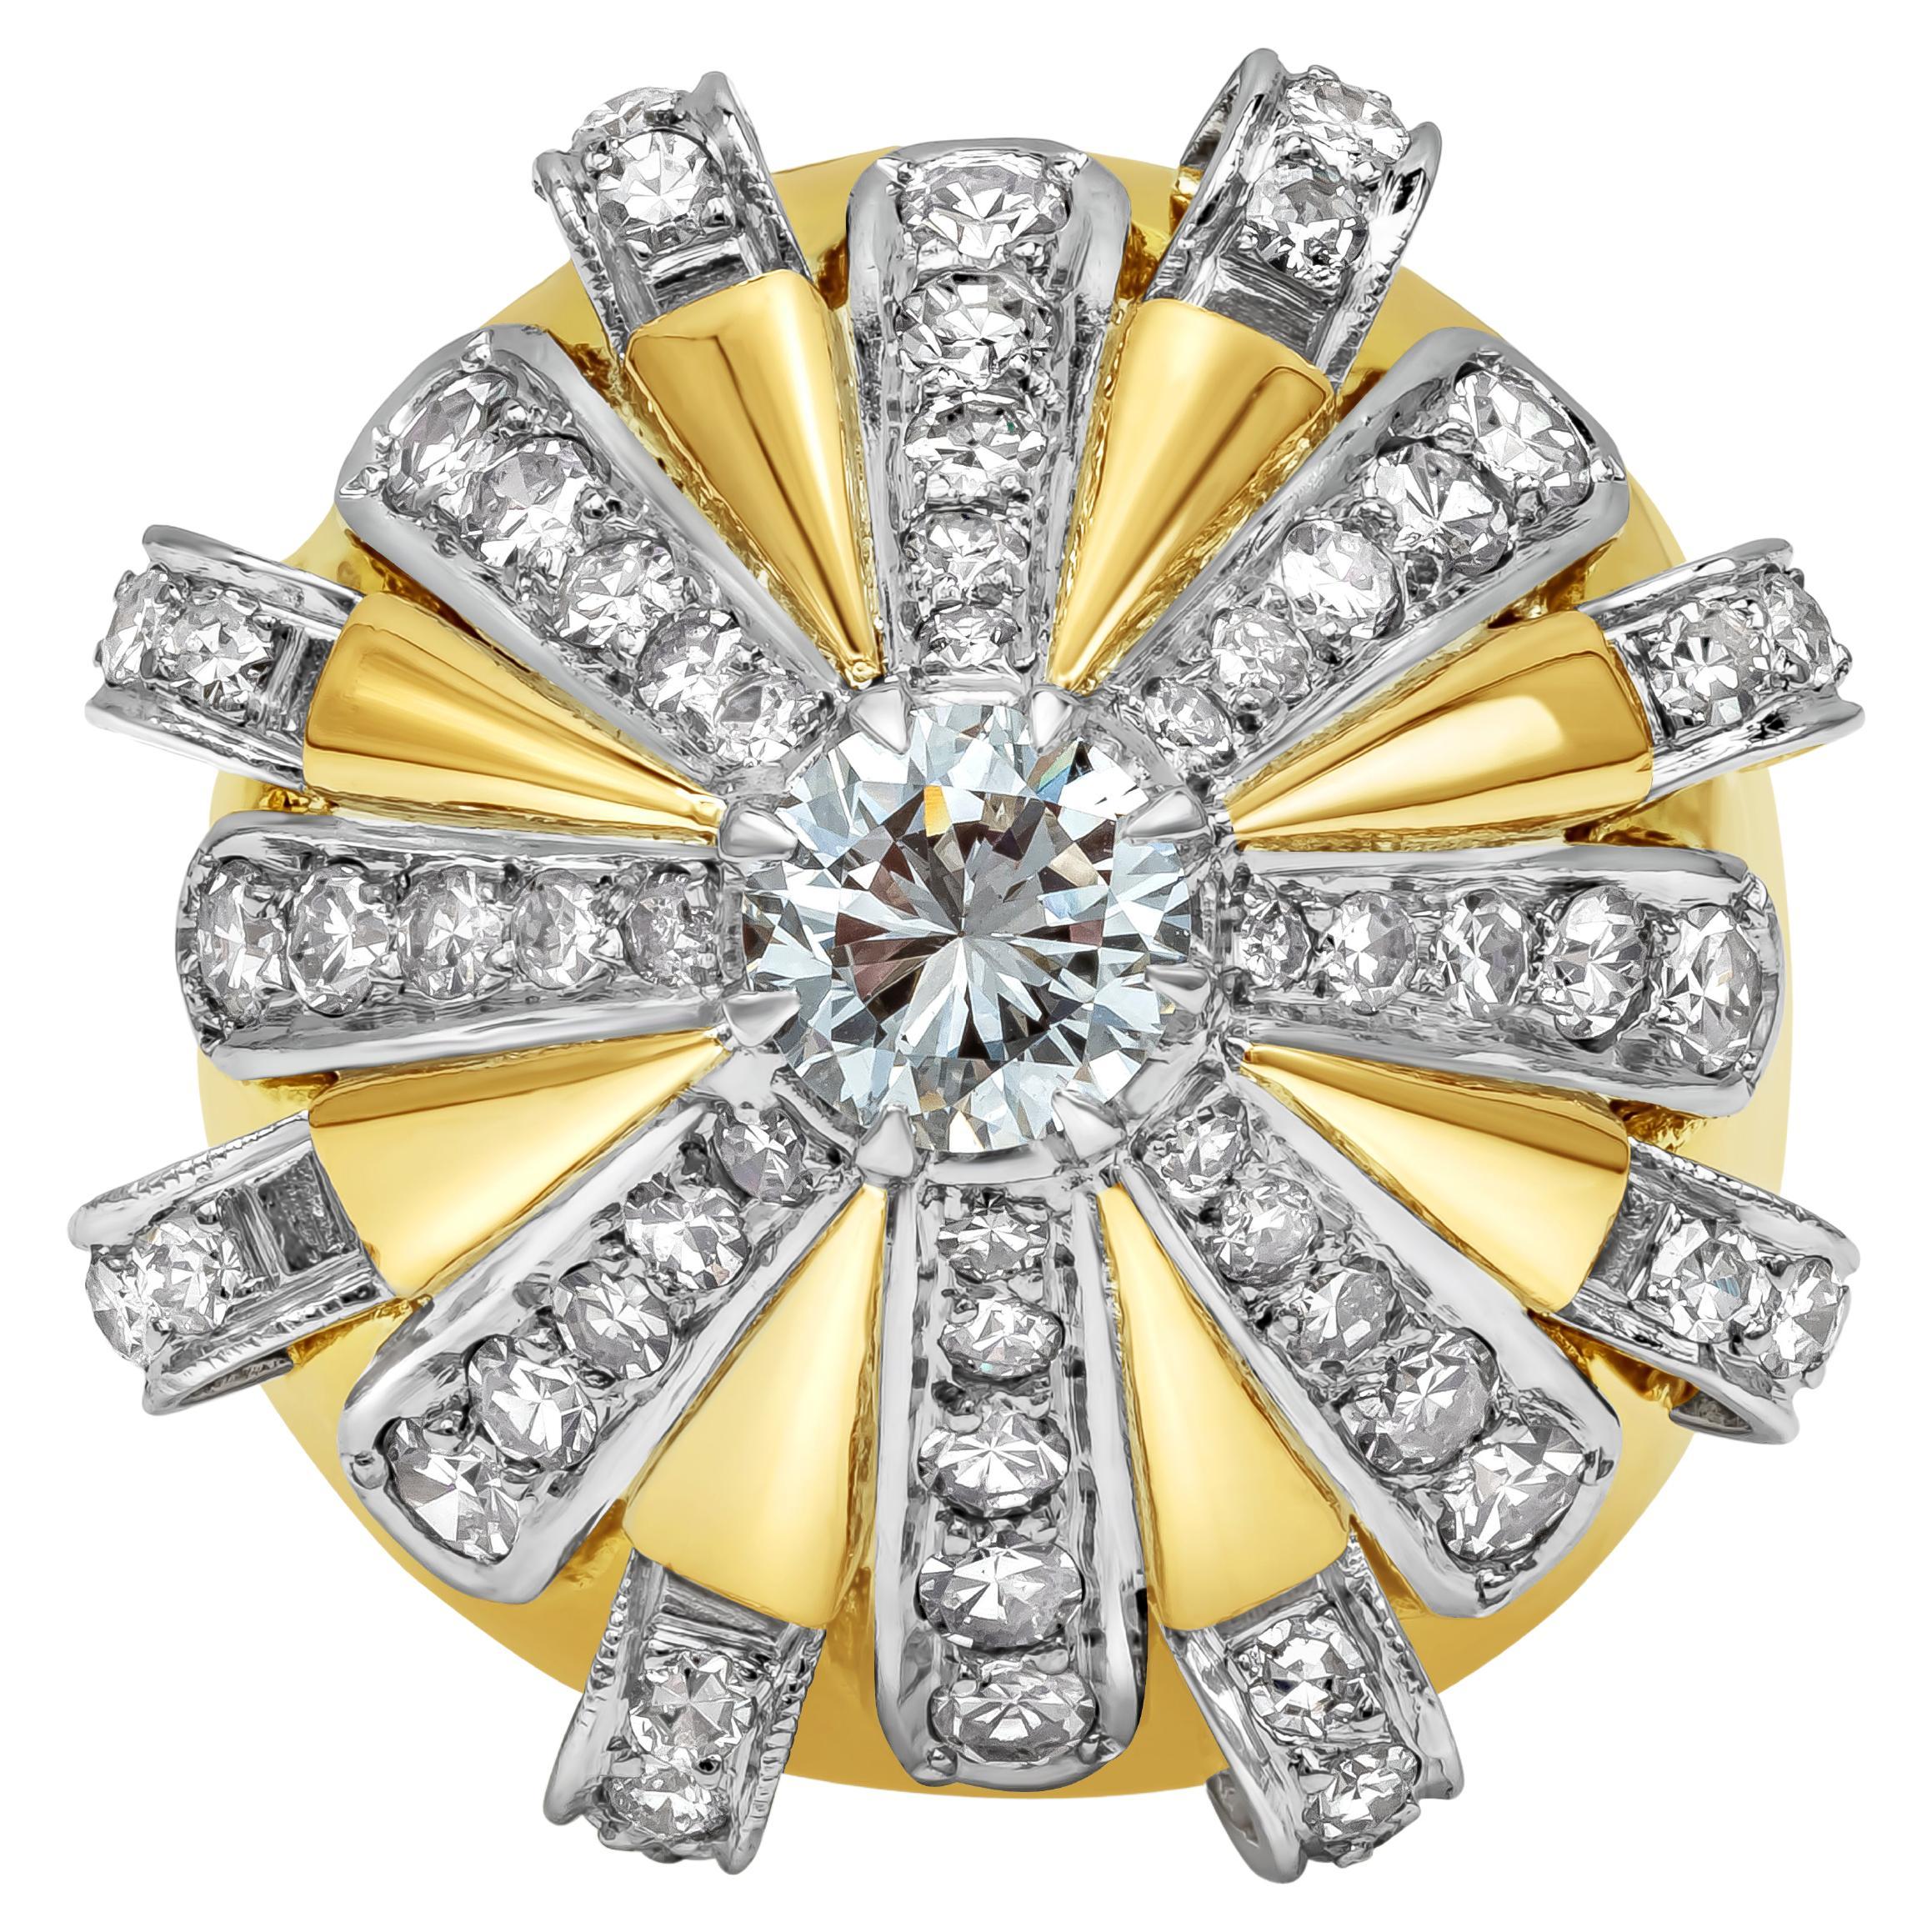 Bague cocktail avec diamants taille ronde brillants de 2,06 carats au total